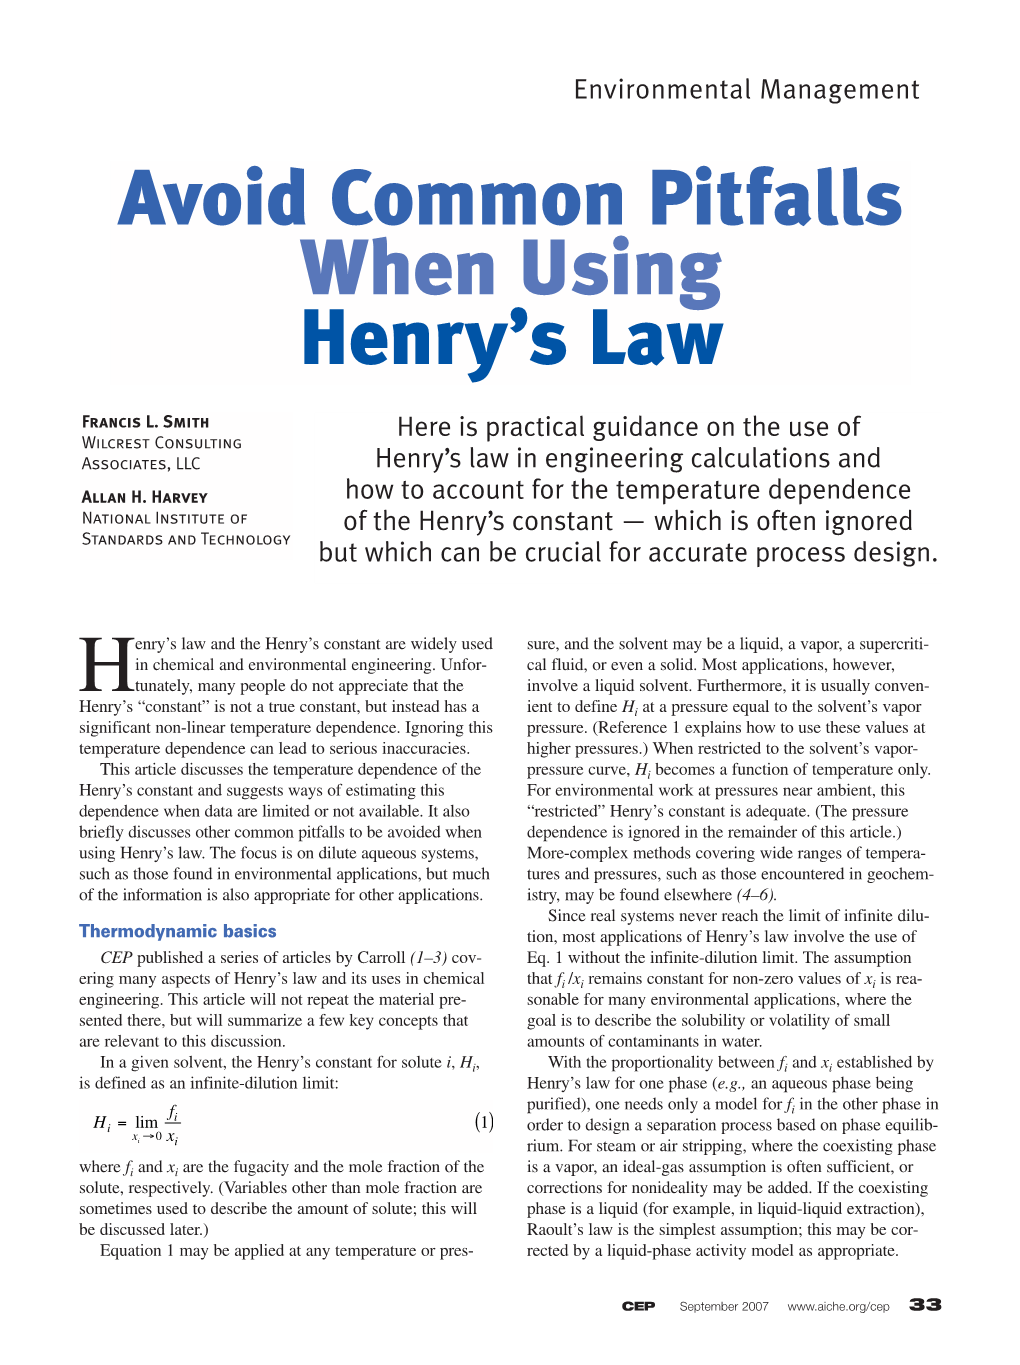 Avoid Common Pitfalls When Using Henry's